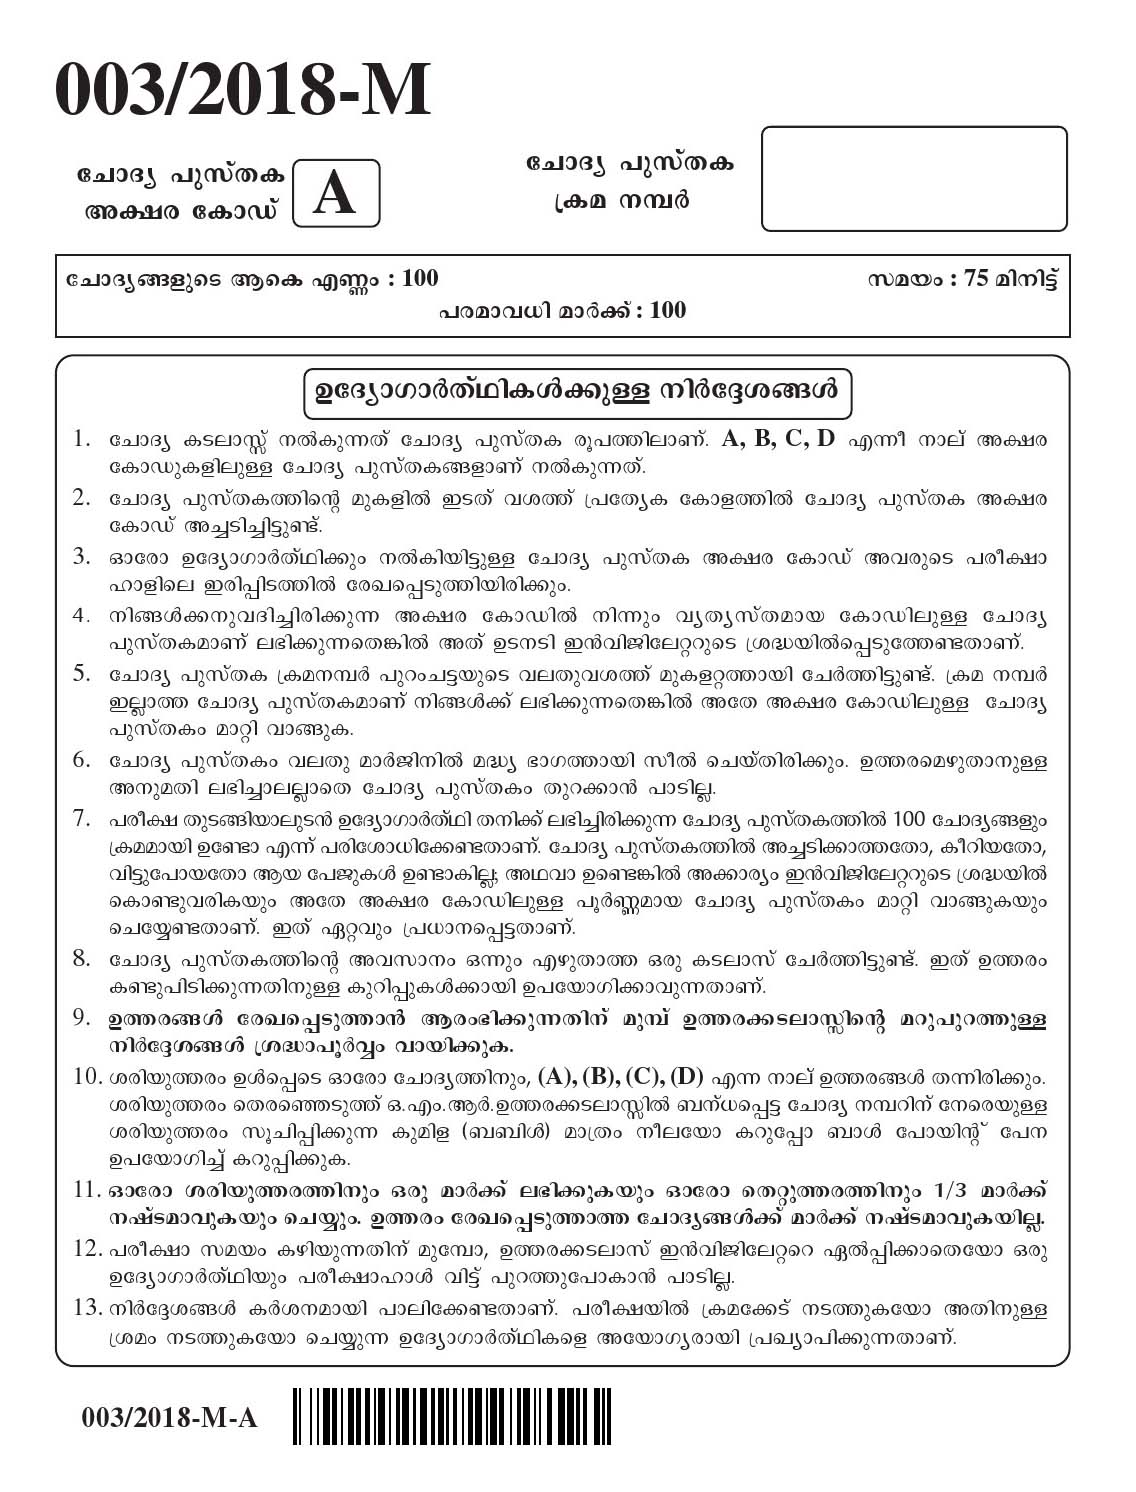 Kerala Last Grade Servants Exam 2018 Question Paper Code 0032018 M 1